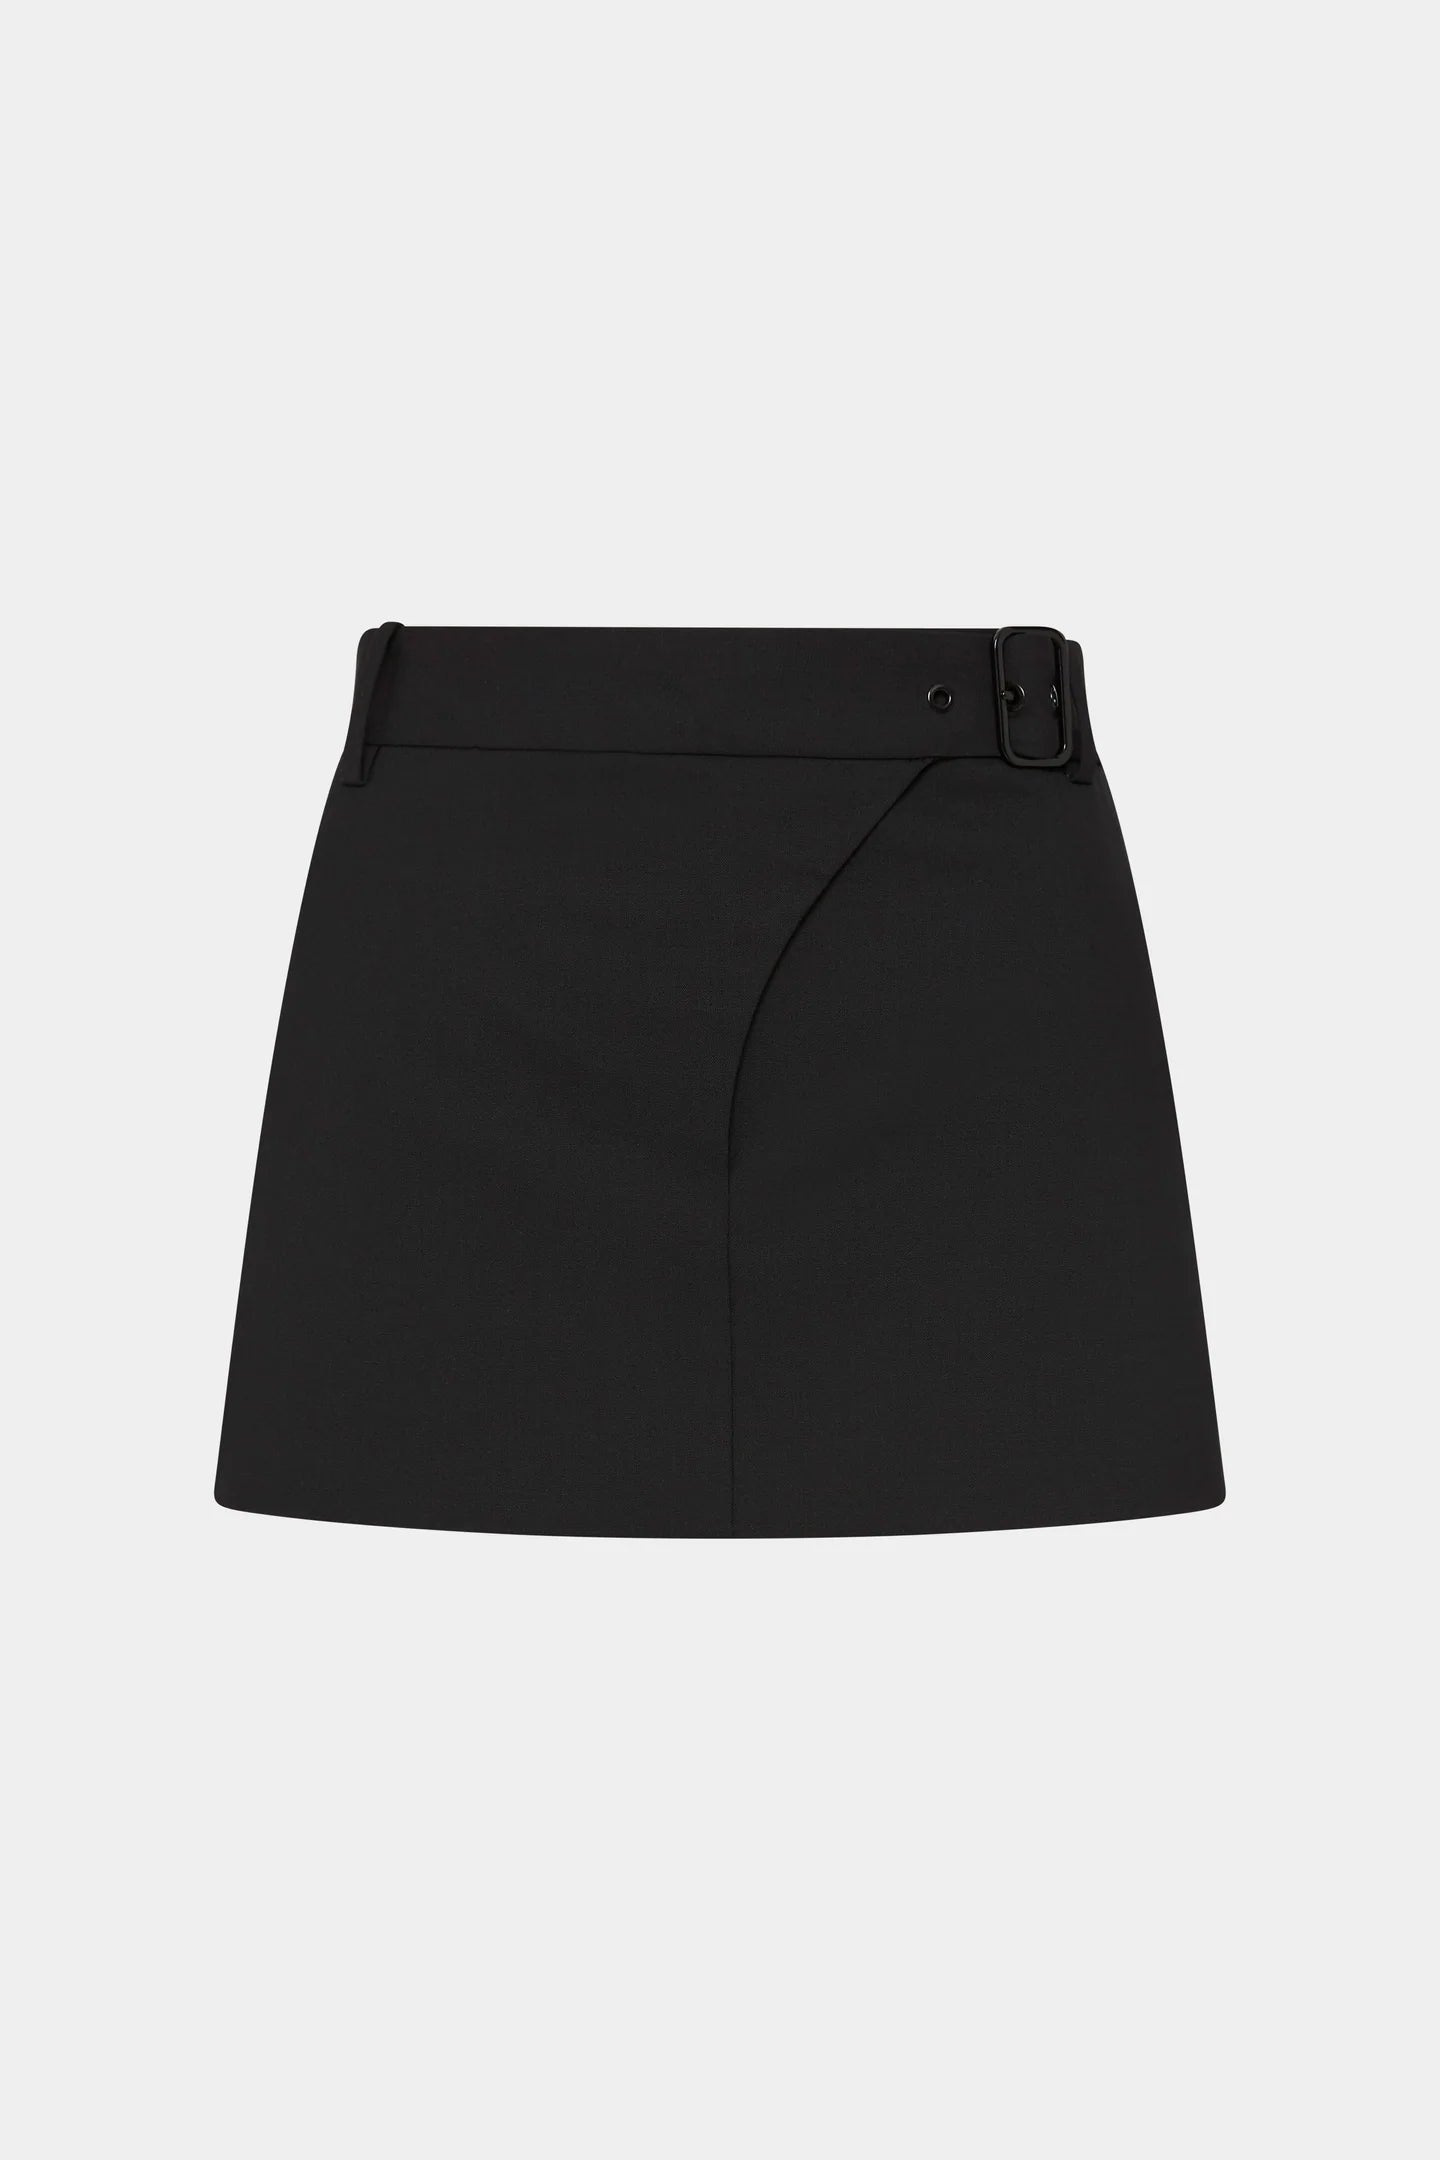 Leonardo Belted Mini Skirt Black